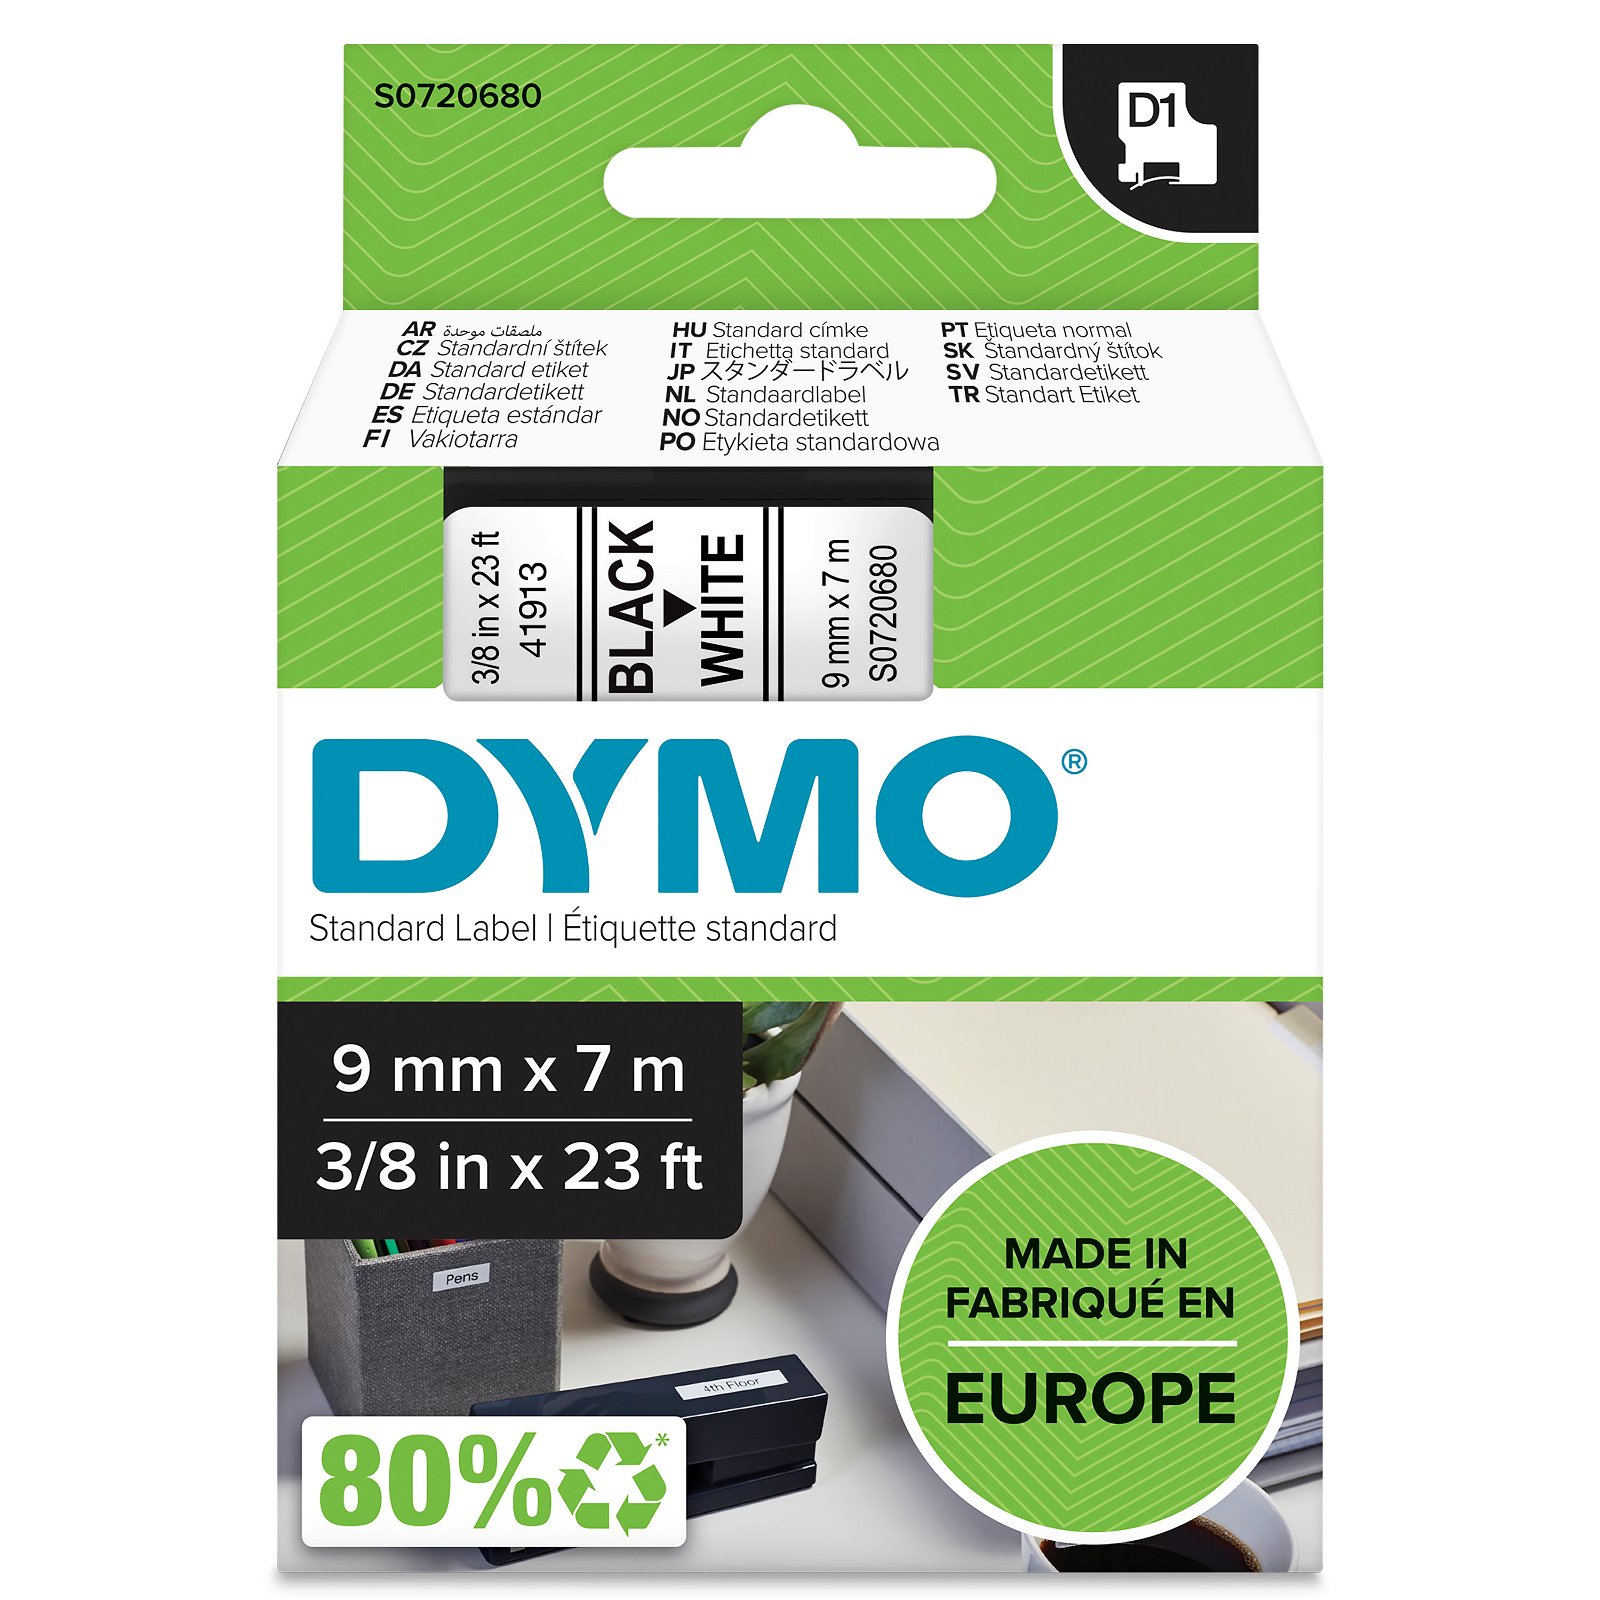 Dymo D1 standard tapekasette 9 mm sort;hvid Polyester